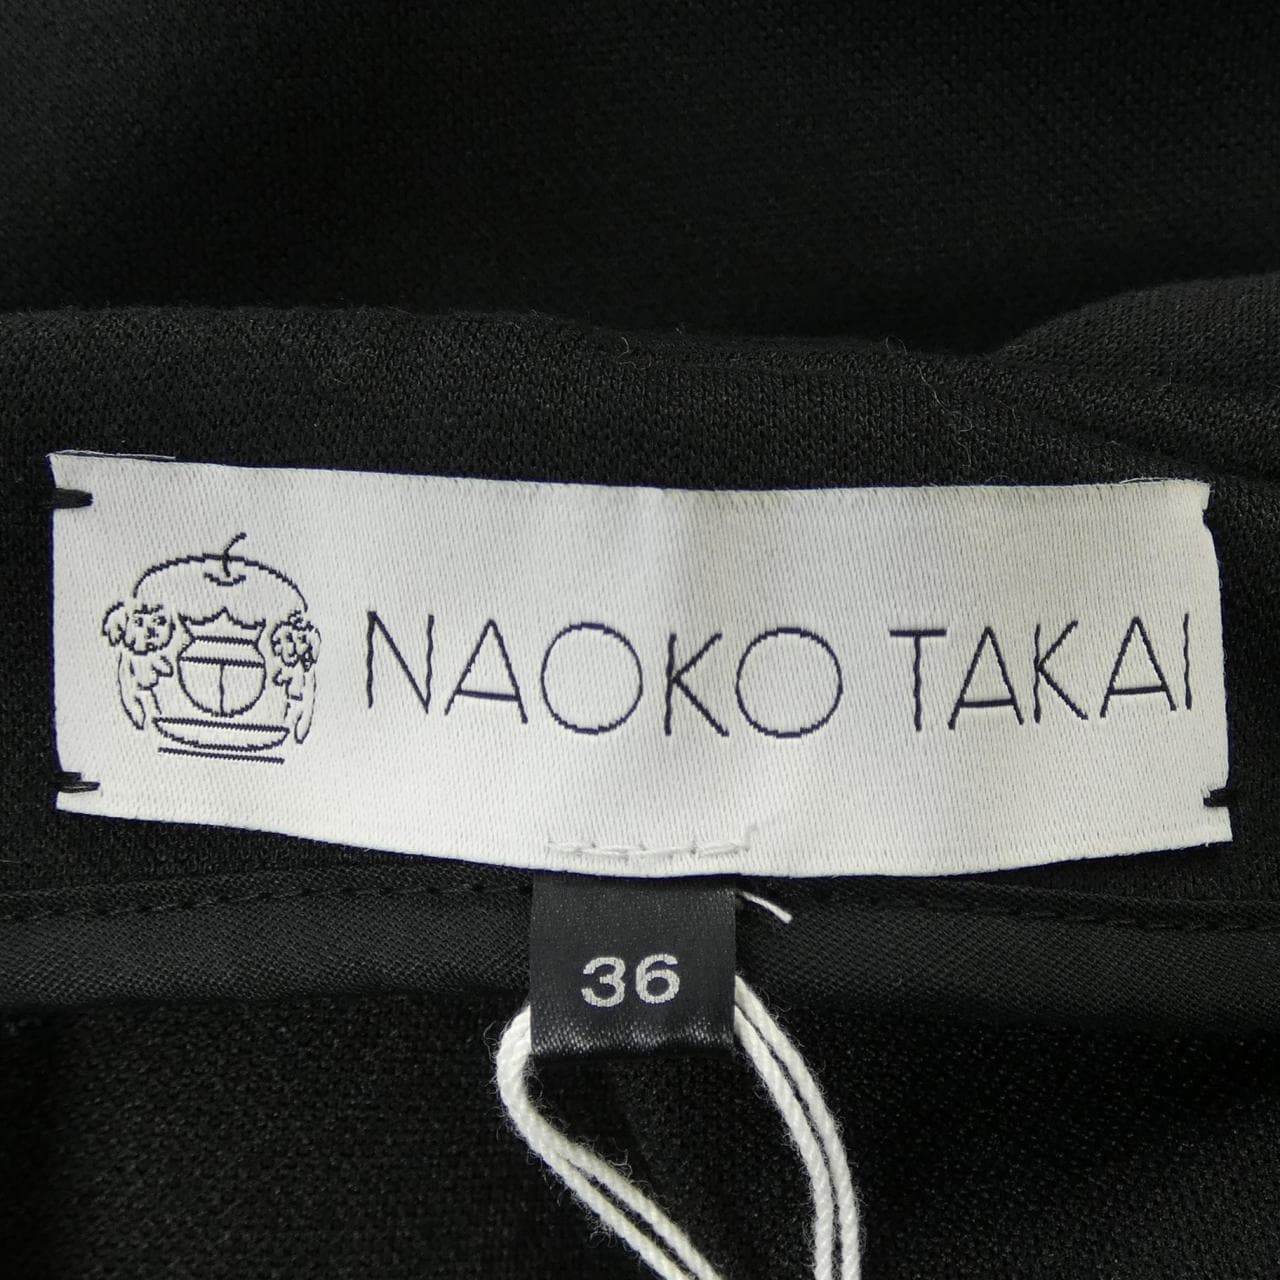 NAOKOTAKAI スカート